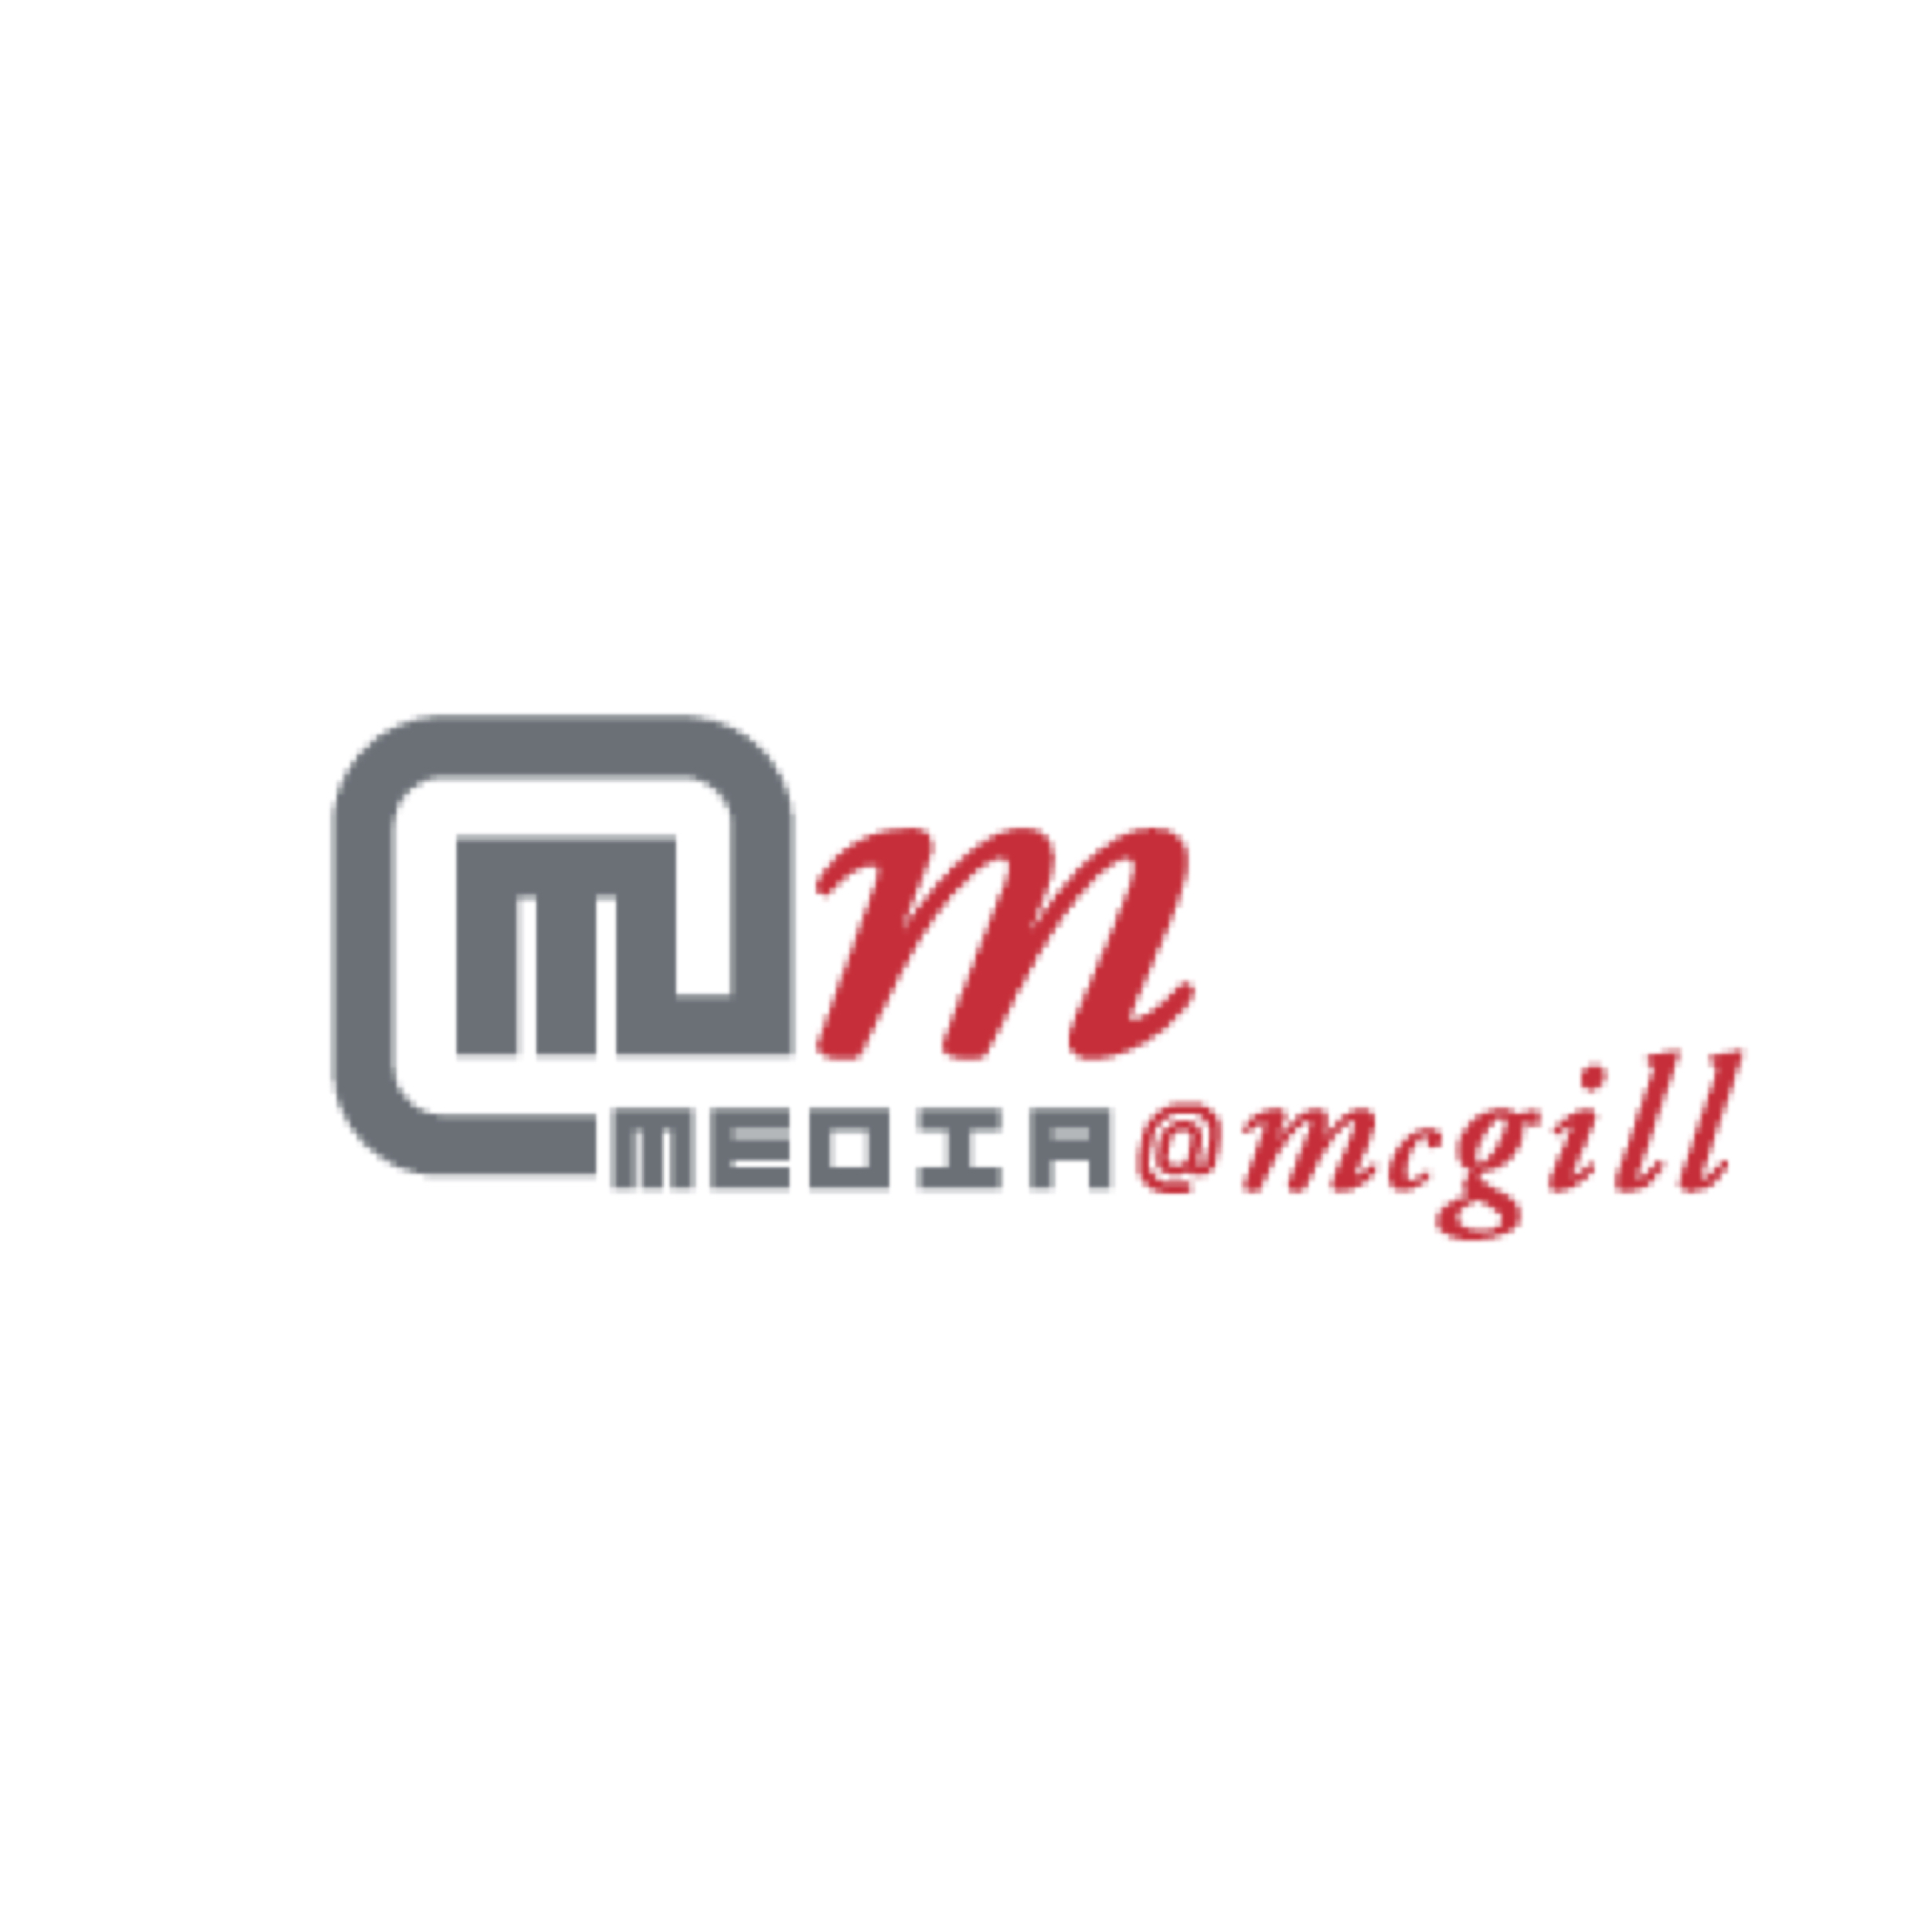 media mcgill logo.jpg